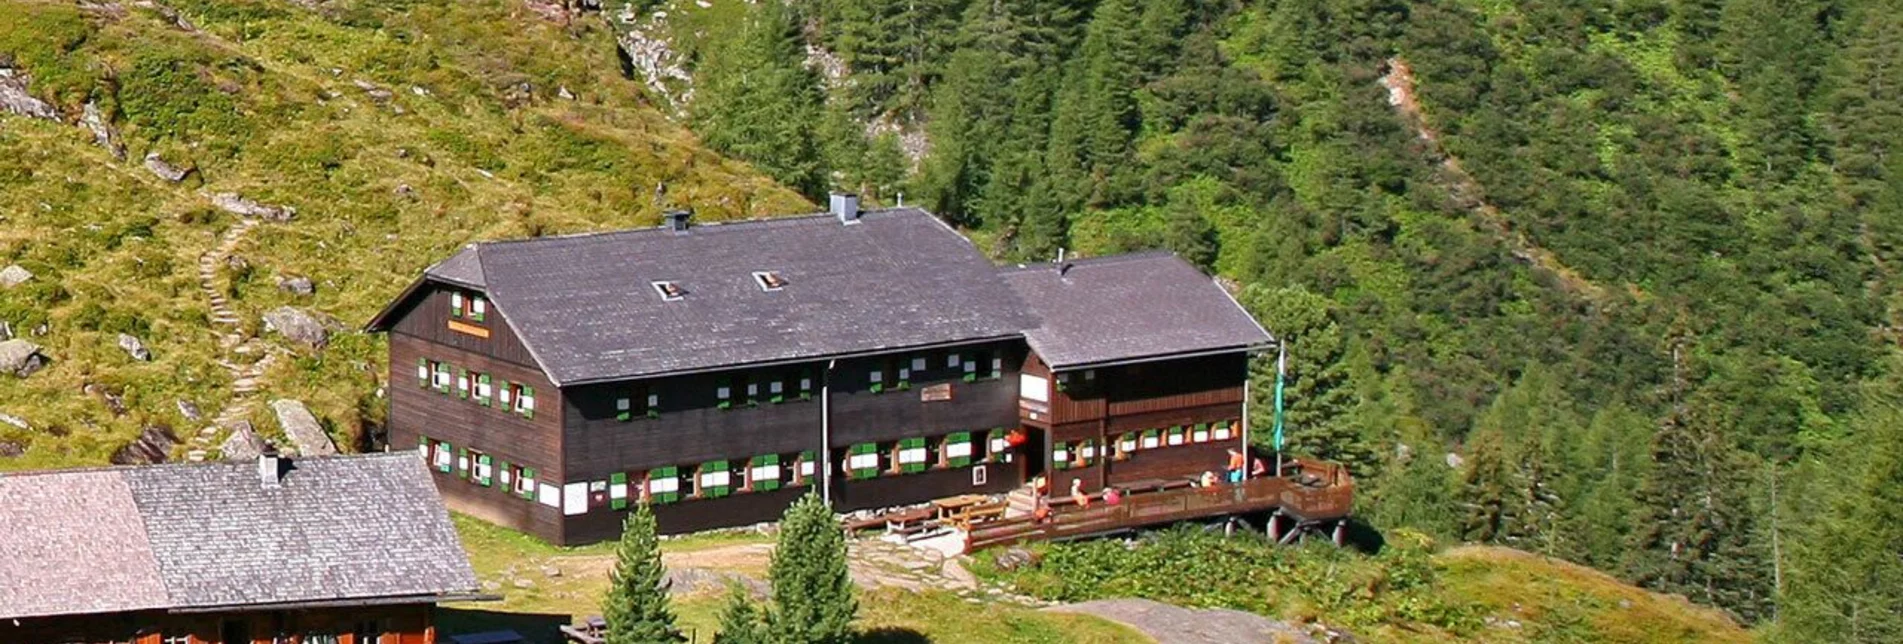 Mountain Hike Preintalerhütte - Putzentalalm | Schladminger Tauern Trail Alternative - Touren-Impression #1 | © Erlebnisregion Schladming-Dachstein